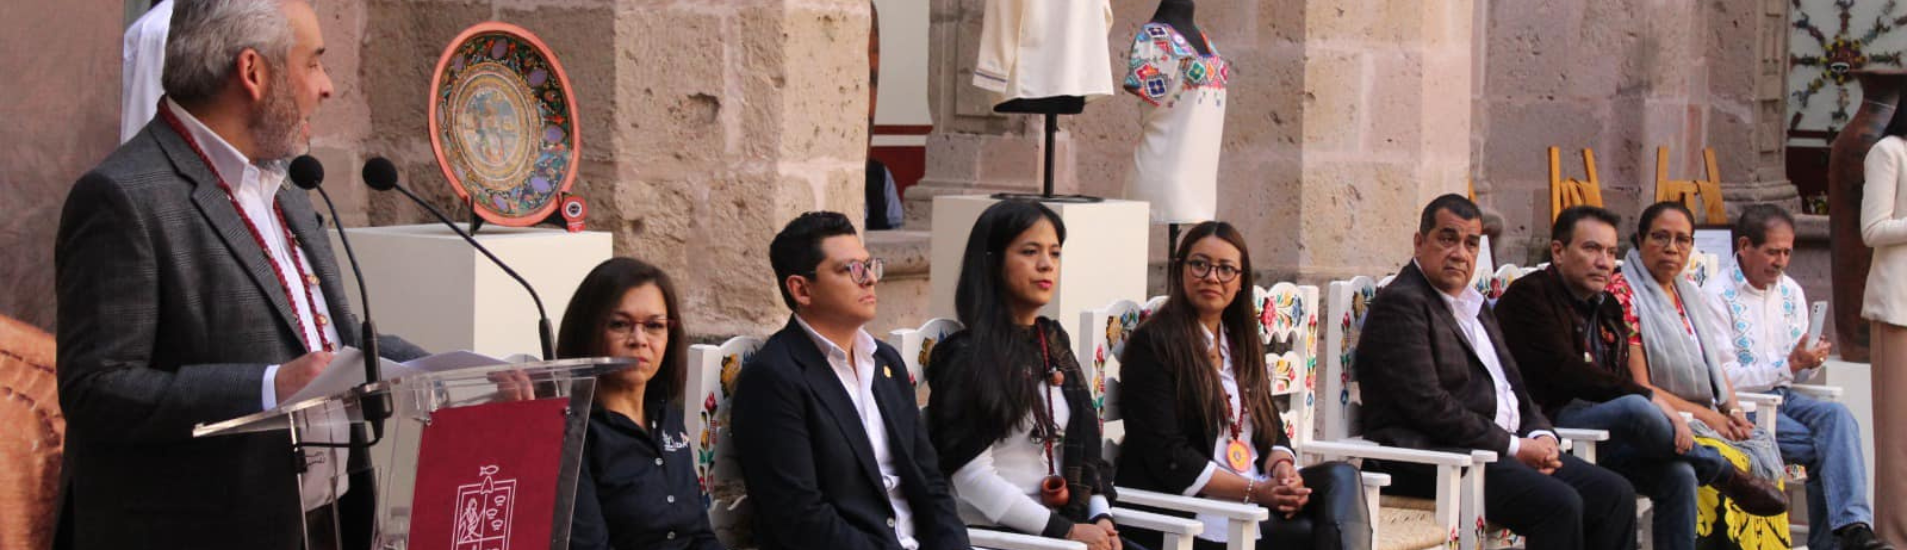 El Instituto del Artesano Michoacano entrega reconocimientos a 6 marcas de artesanos del estado. 